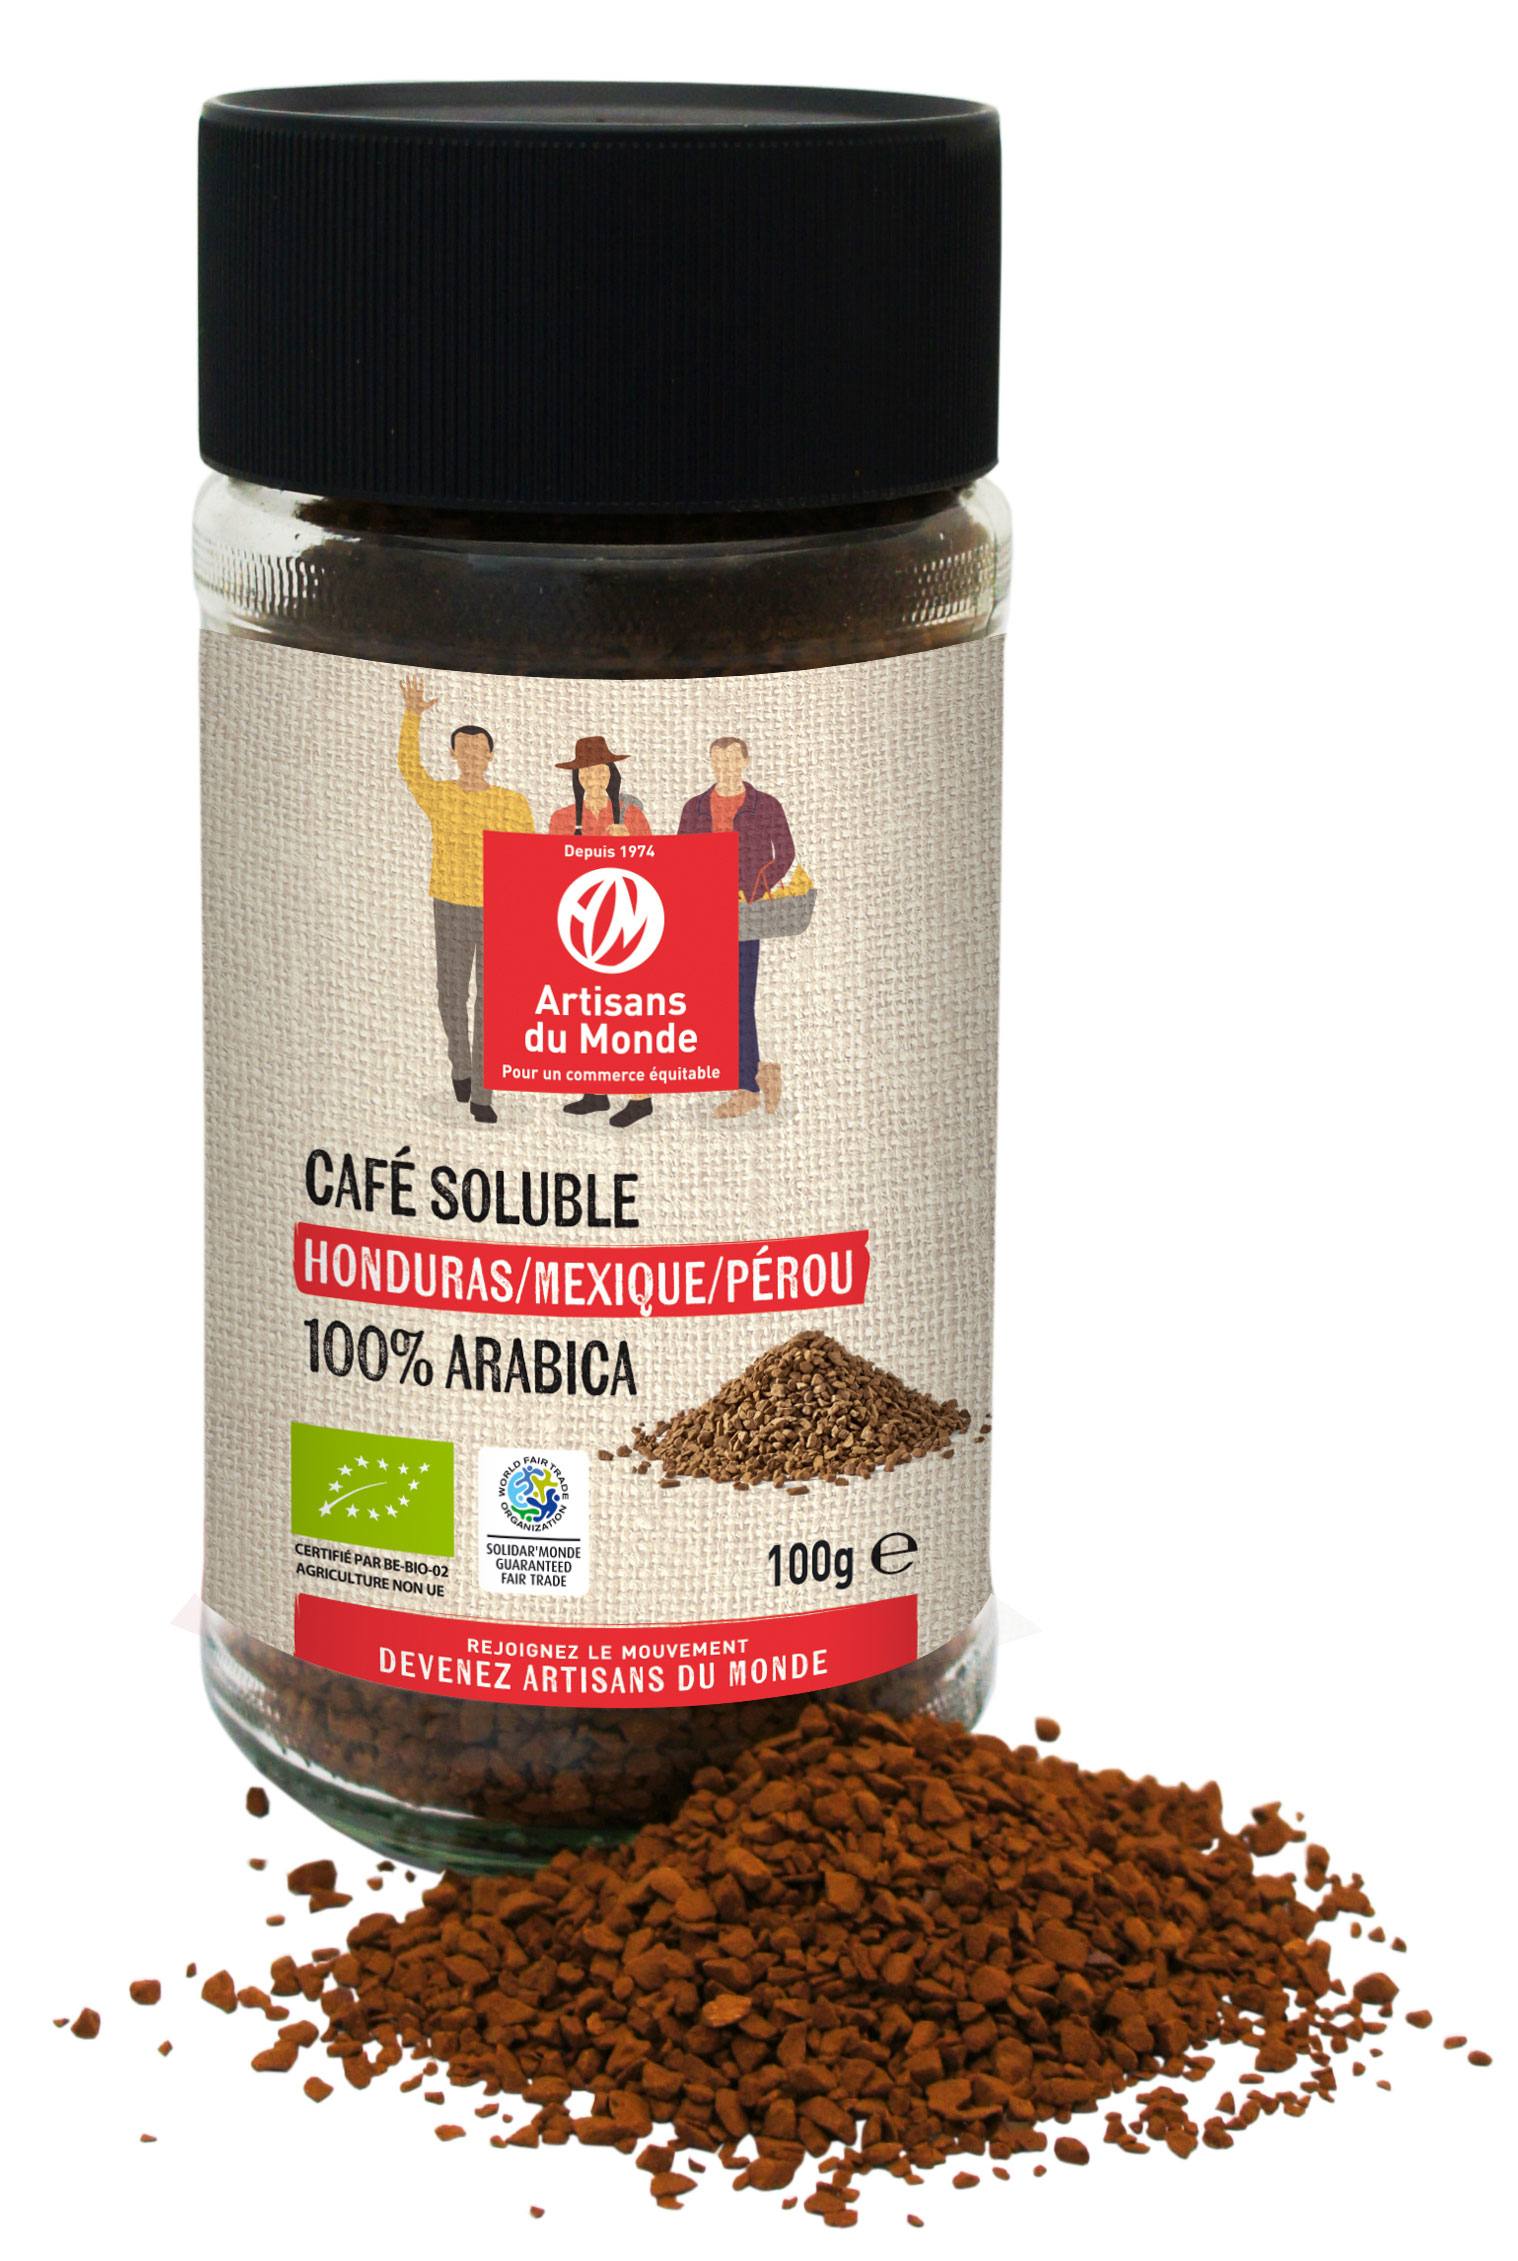 Café en grains origine Brésil 100 % Arabica BIO - 1 kg - Boutique en ligne  de produits d'épicerie gourmande sucrée (chocolats/cafés/thés/infusions) et  épicerie salée (épices/aromates/tartinables/gâteaux apéritif)